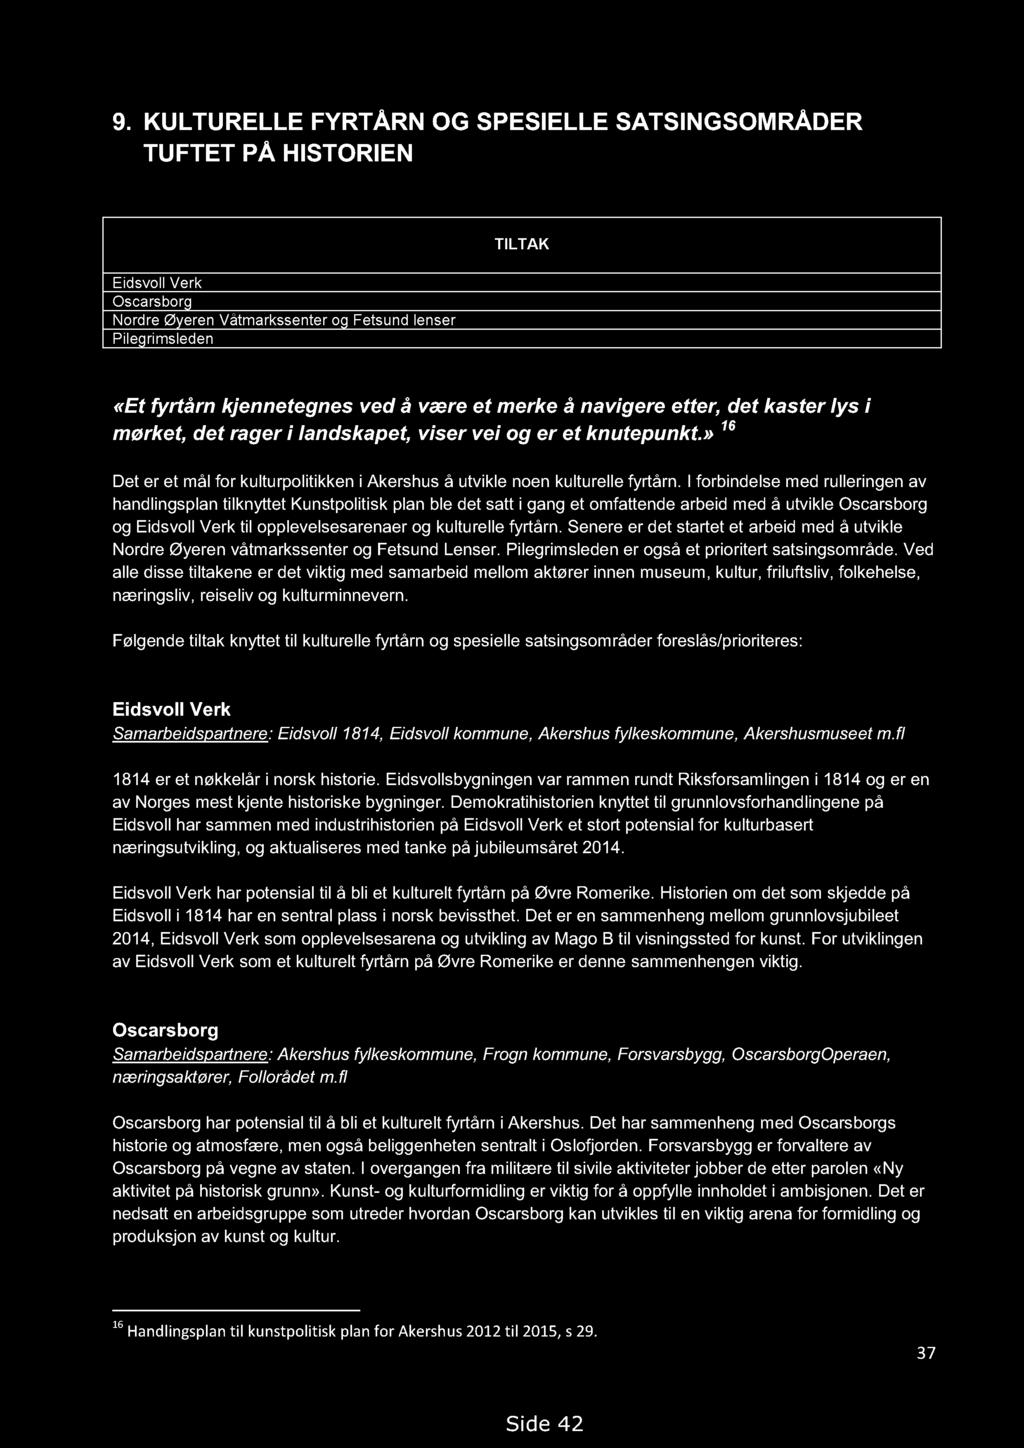 Handlingsprogram for kulturminner i Akershus 2013-2018. Høringsutkast 14.09.2012, med endringer 19.02.2013 9.